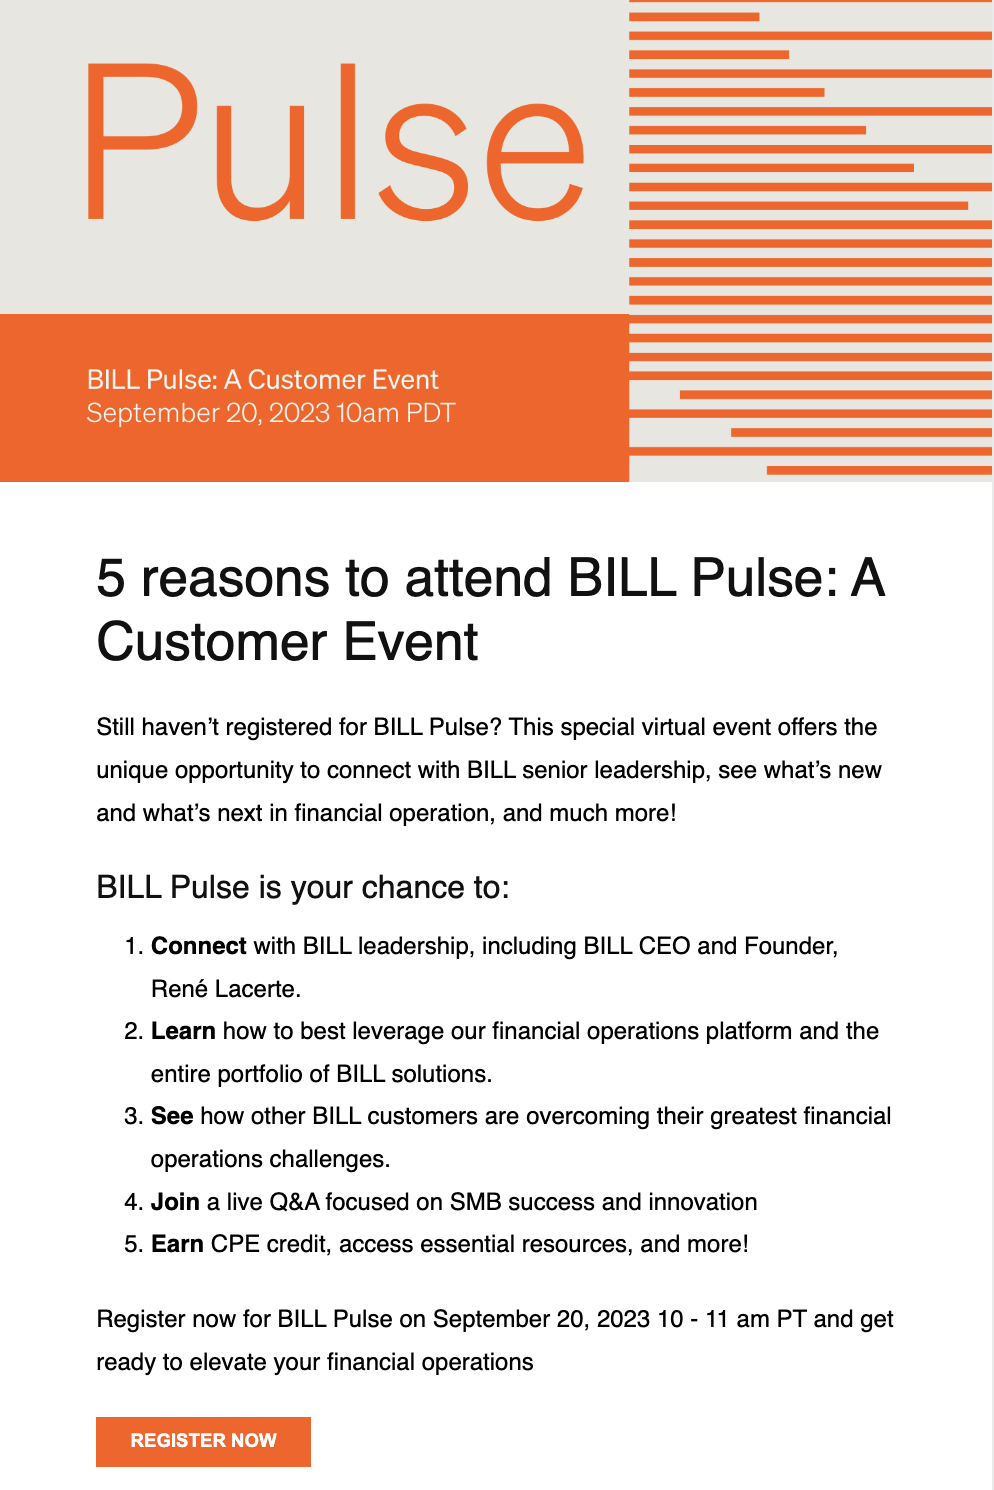 BILL Pulse customer event email invite.